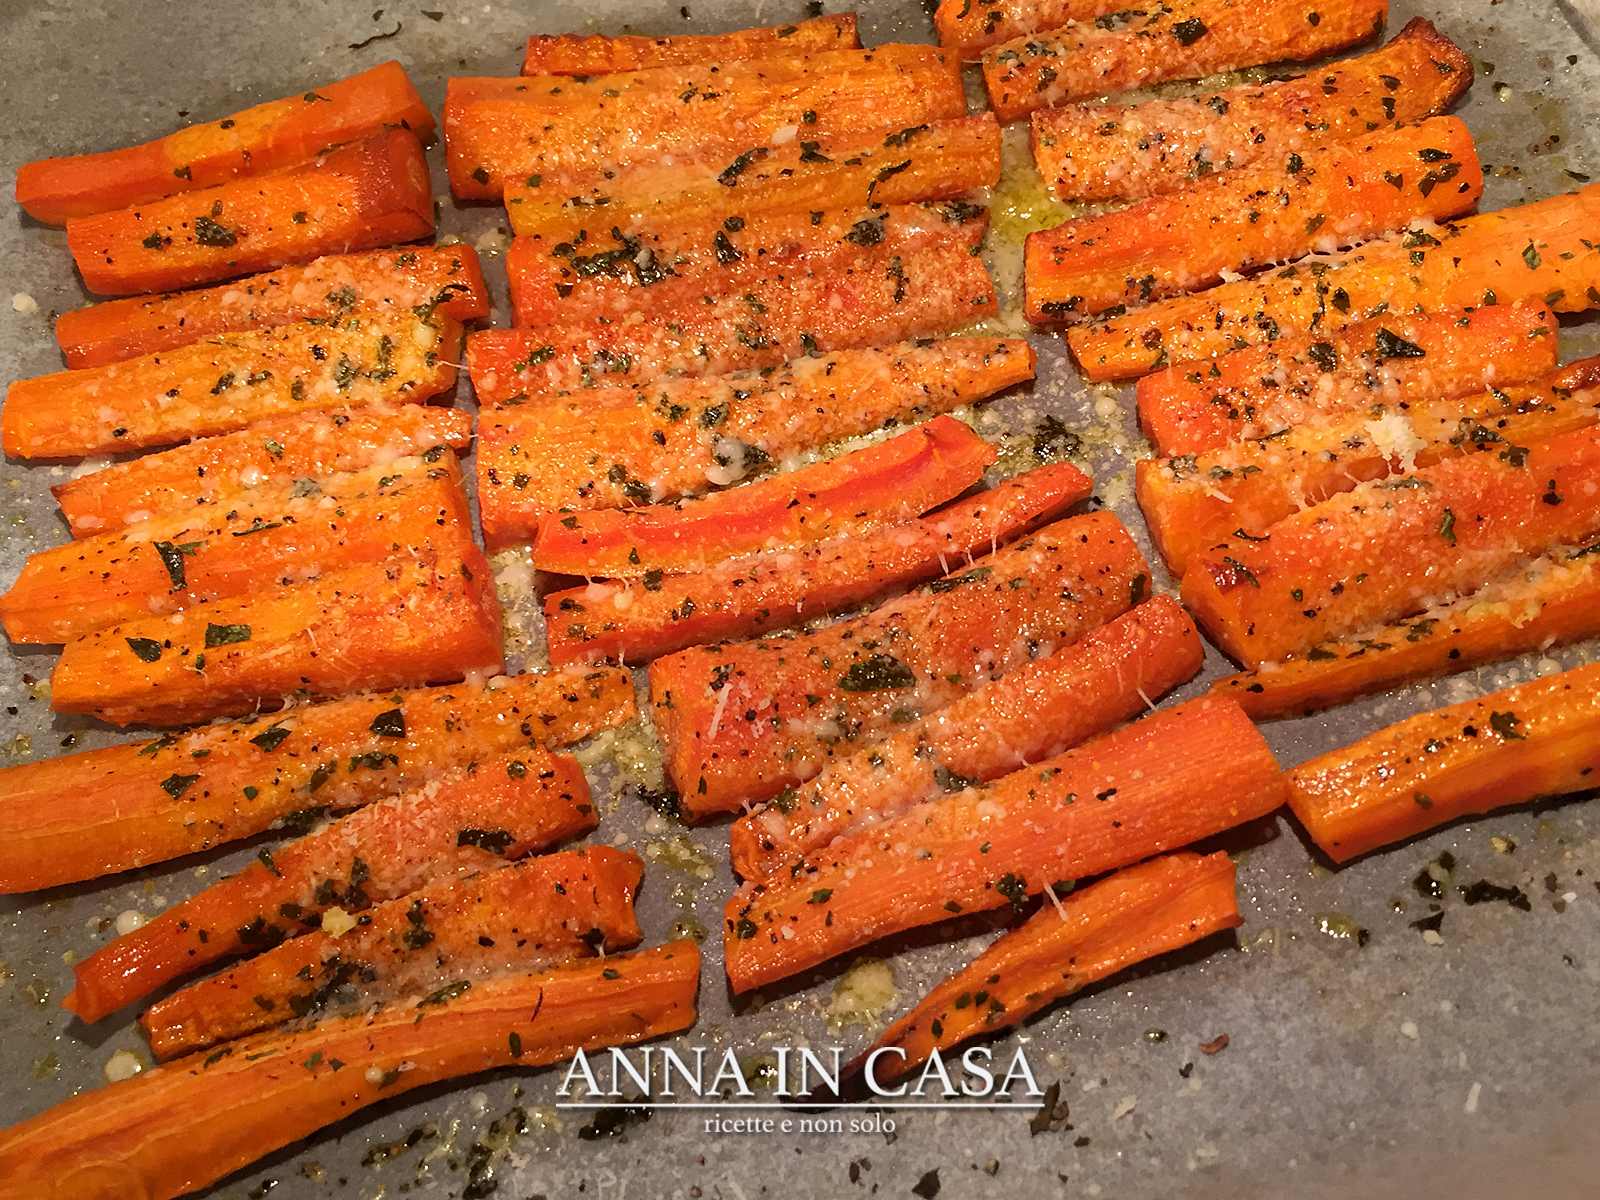 Anna in Casa: ricette e non solo: Bastoncini saporiti di carote al forno